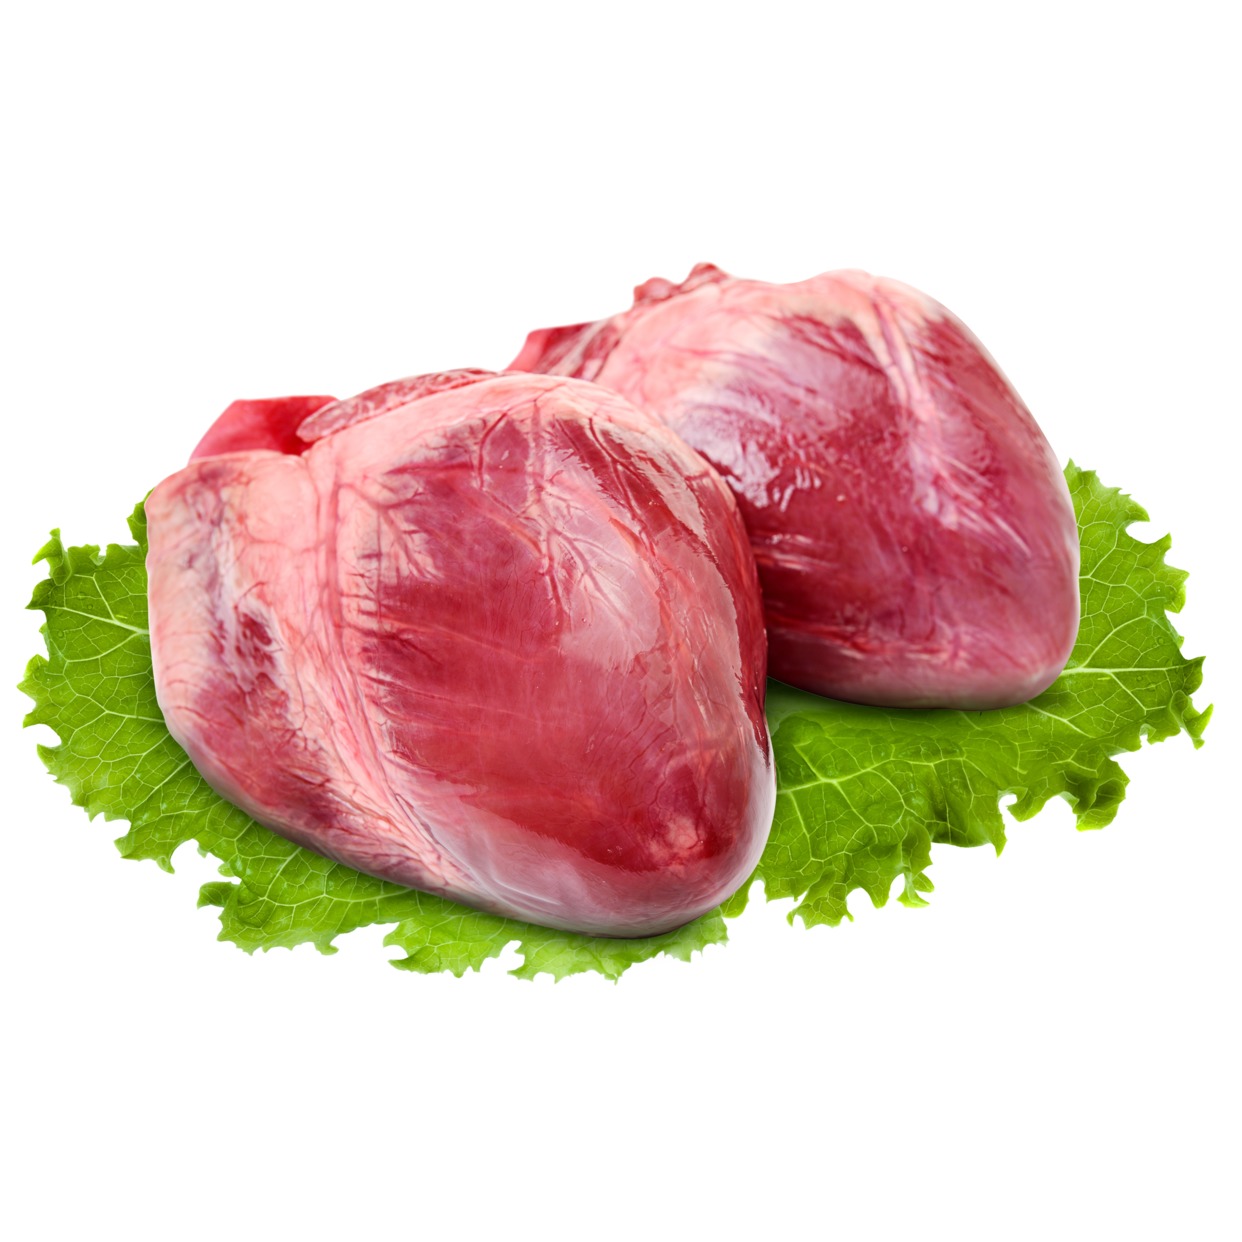 Сердце Свиное, замороженное, 1 кг по акции в Пятерочке